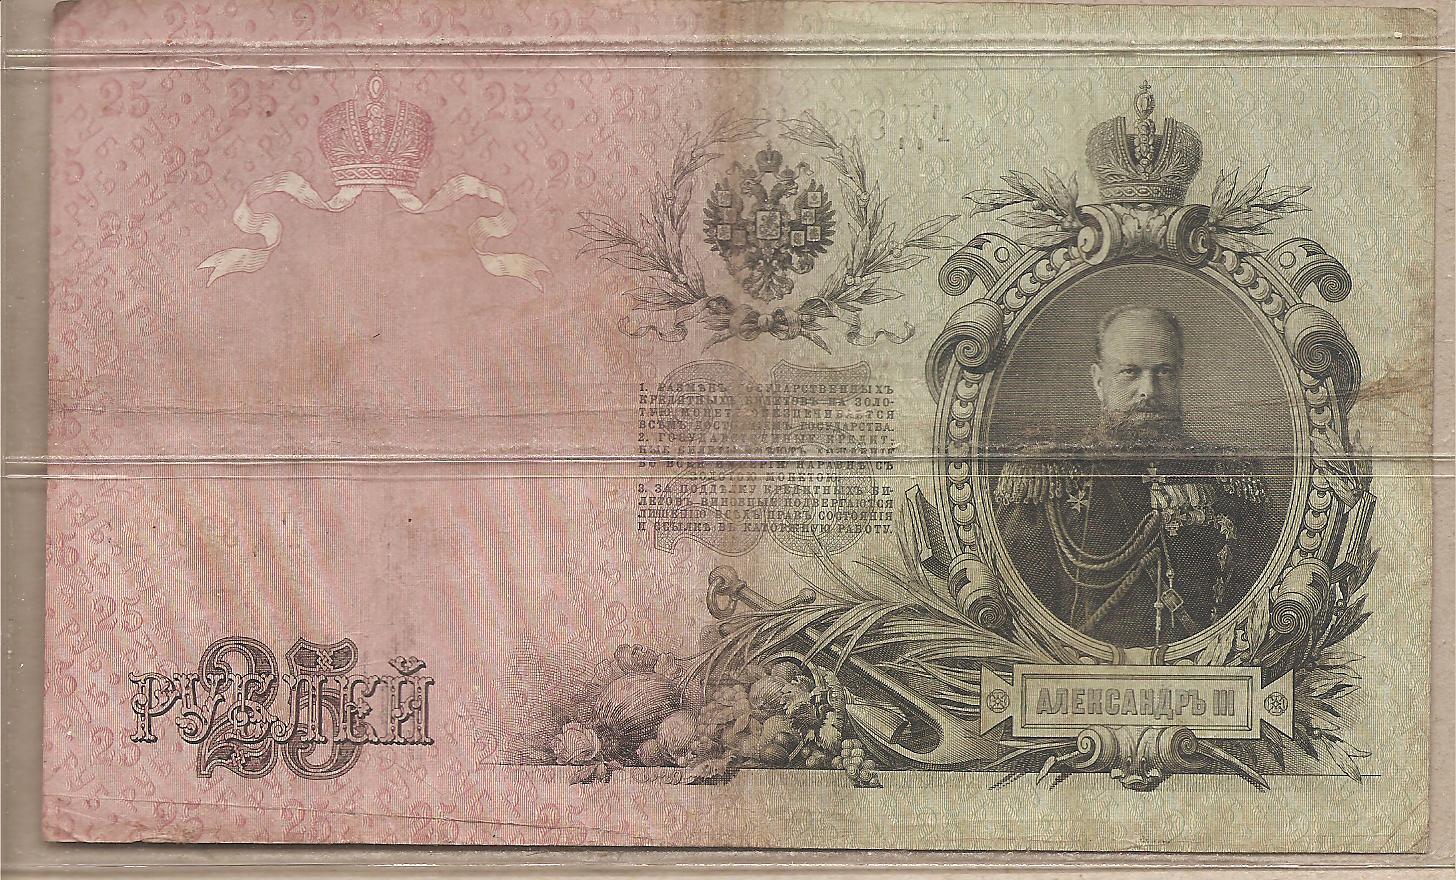 36481 - Impero Russo - banconota circolata da 25 Rubli - 1909